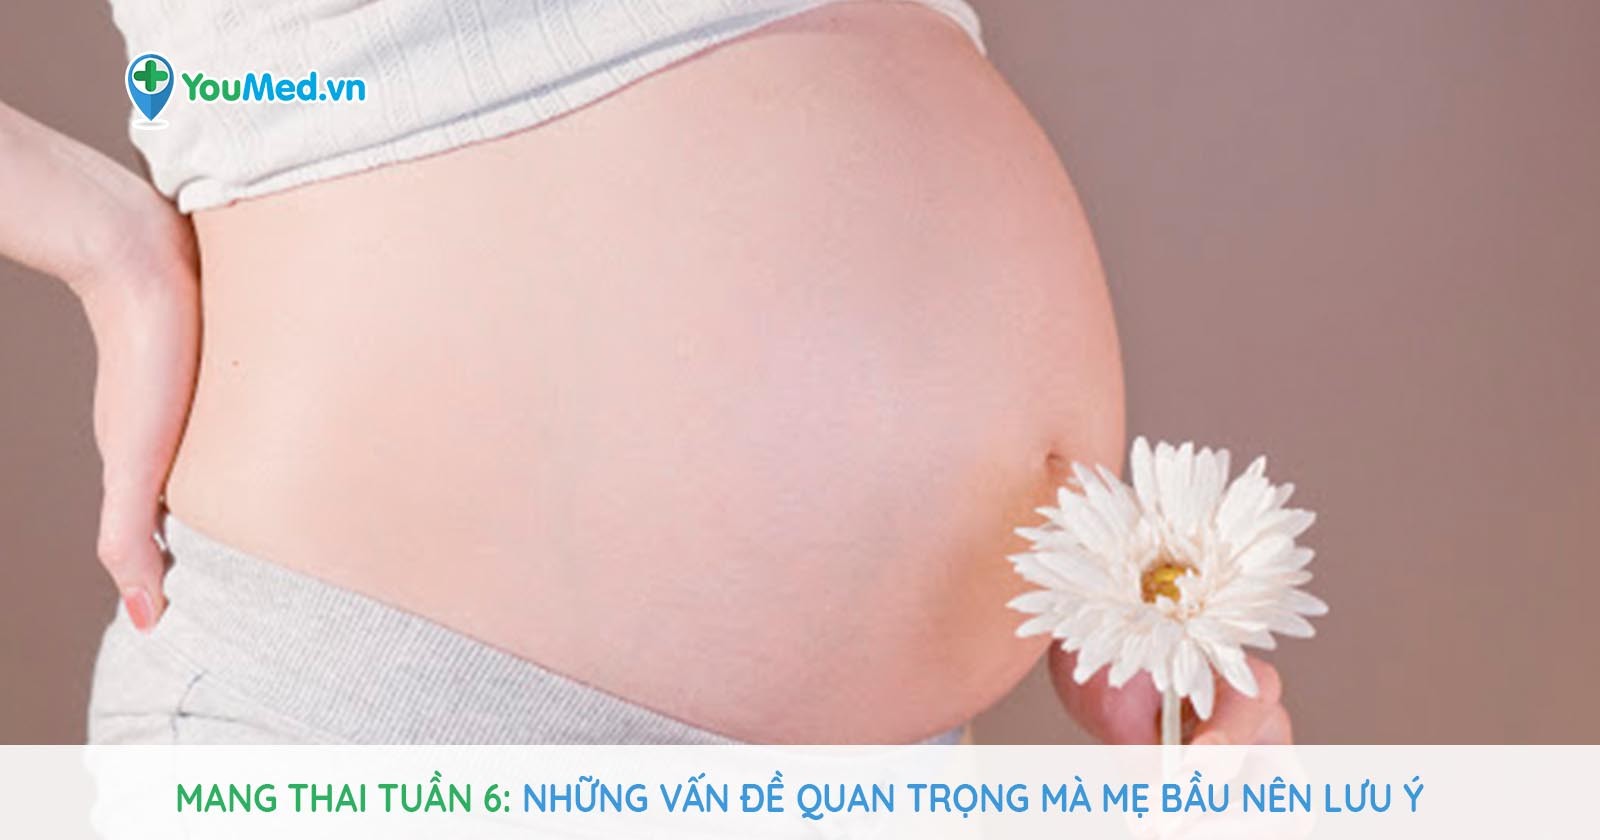 Mang thai tuần 6: Những vấn đề quan trọng mà mẹ bầu nên lưu ý